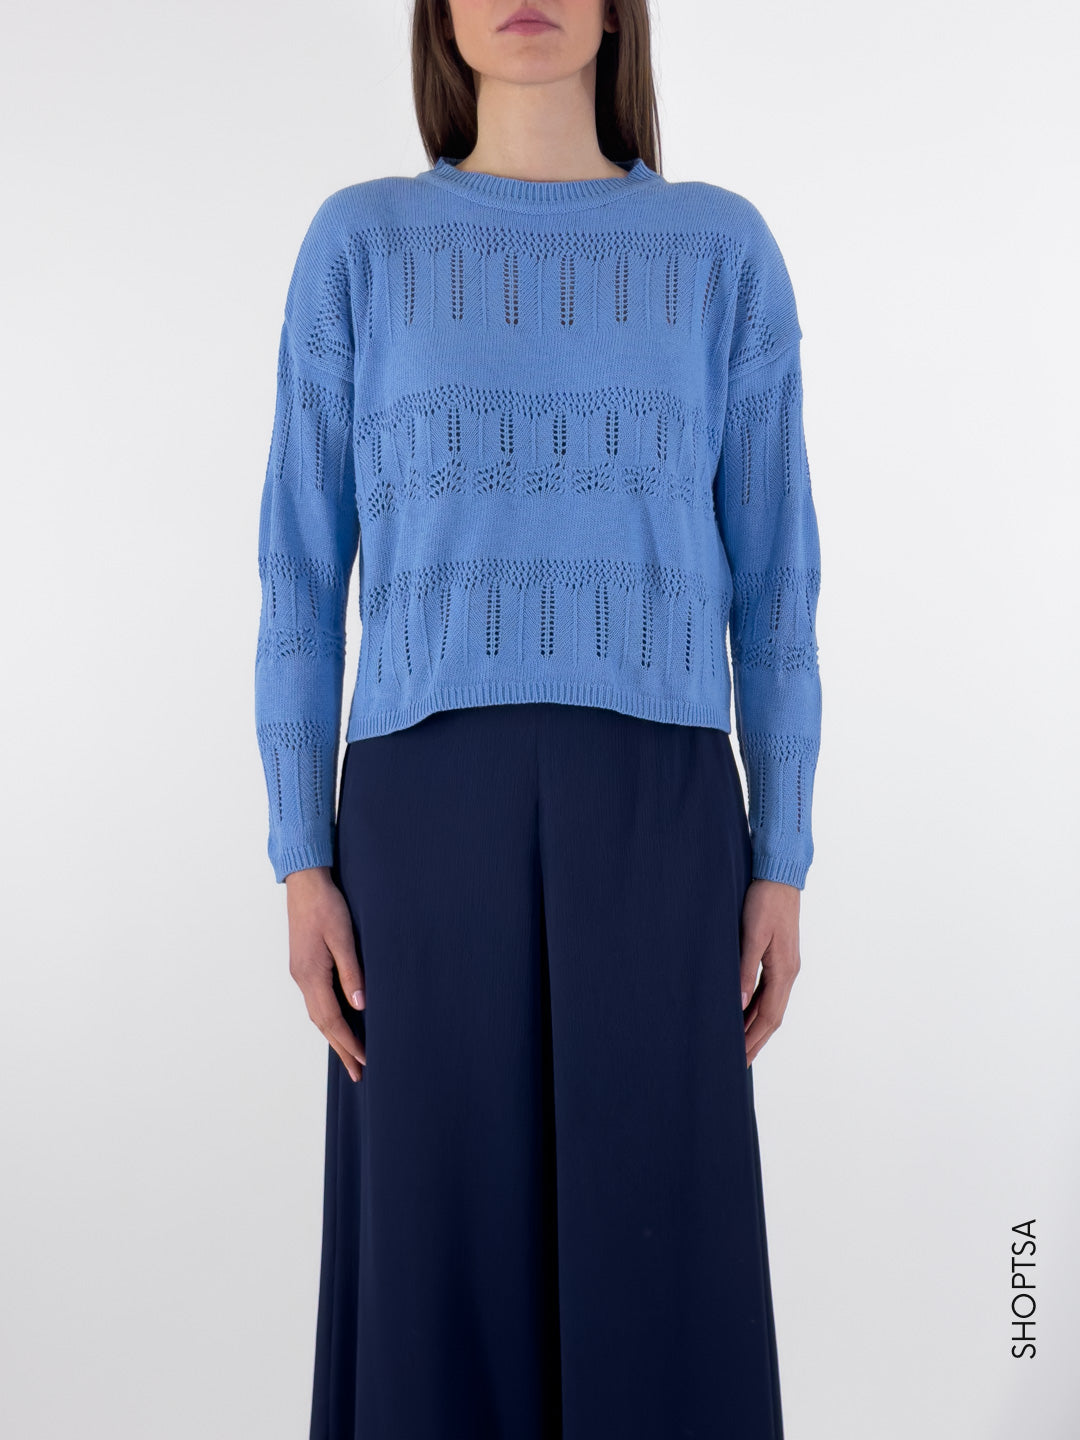 ADELFI cotton sweater - EMME Marella